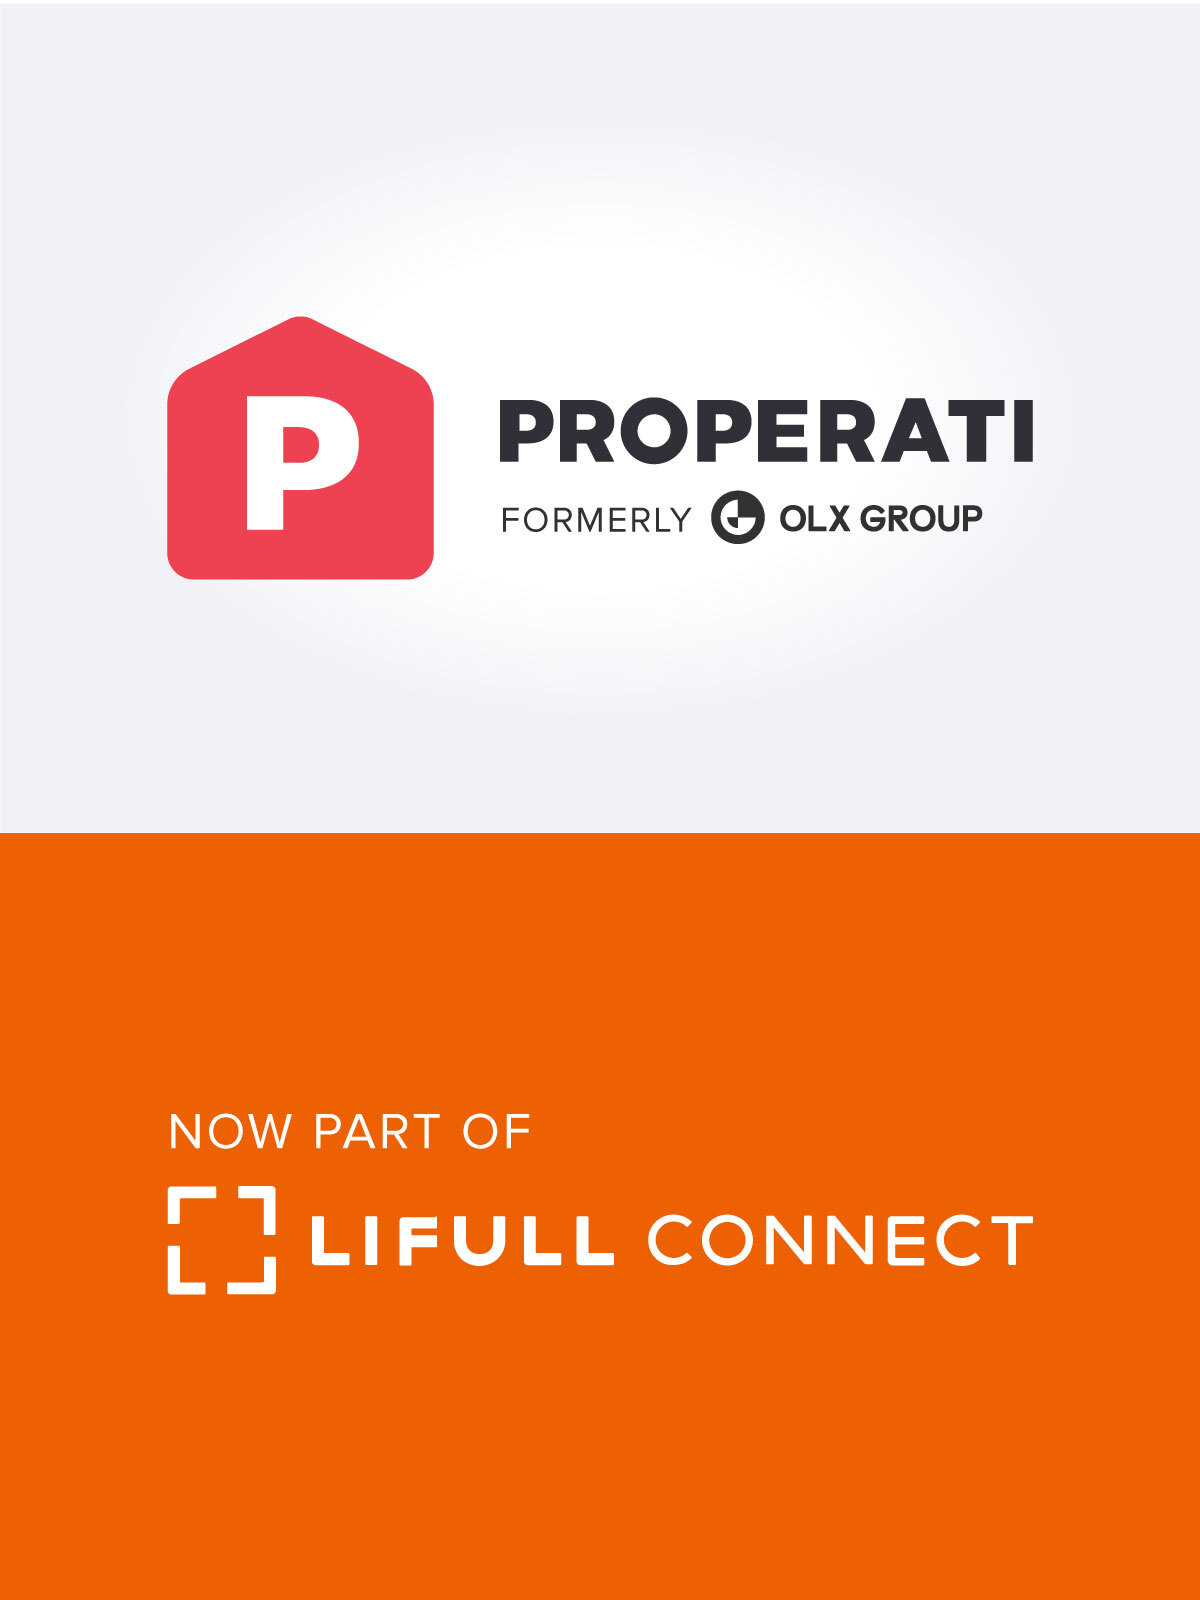 LIFULL Connect, anuncia la adquisición estratégica de la plataforma inmobiliaria de OLX Group en América Latina, Properati, la compañía que